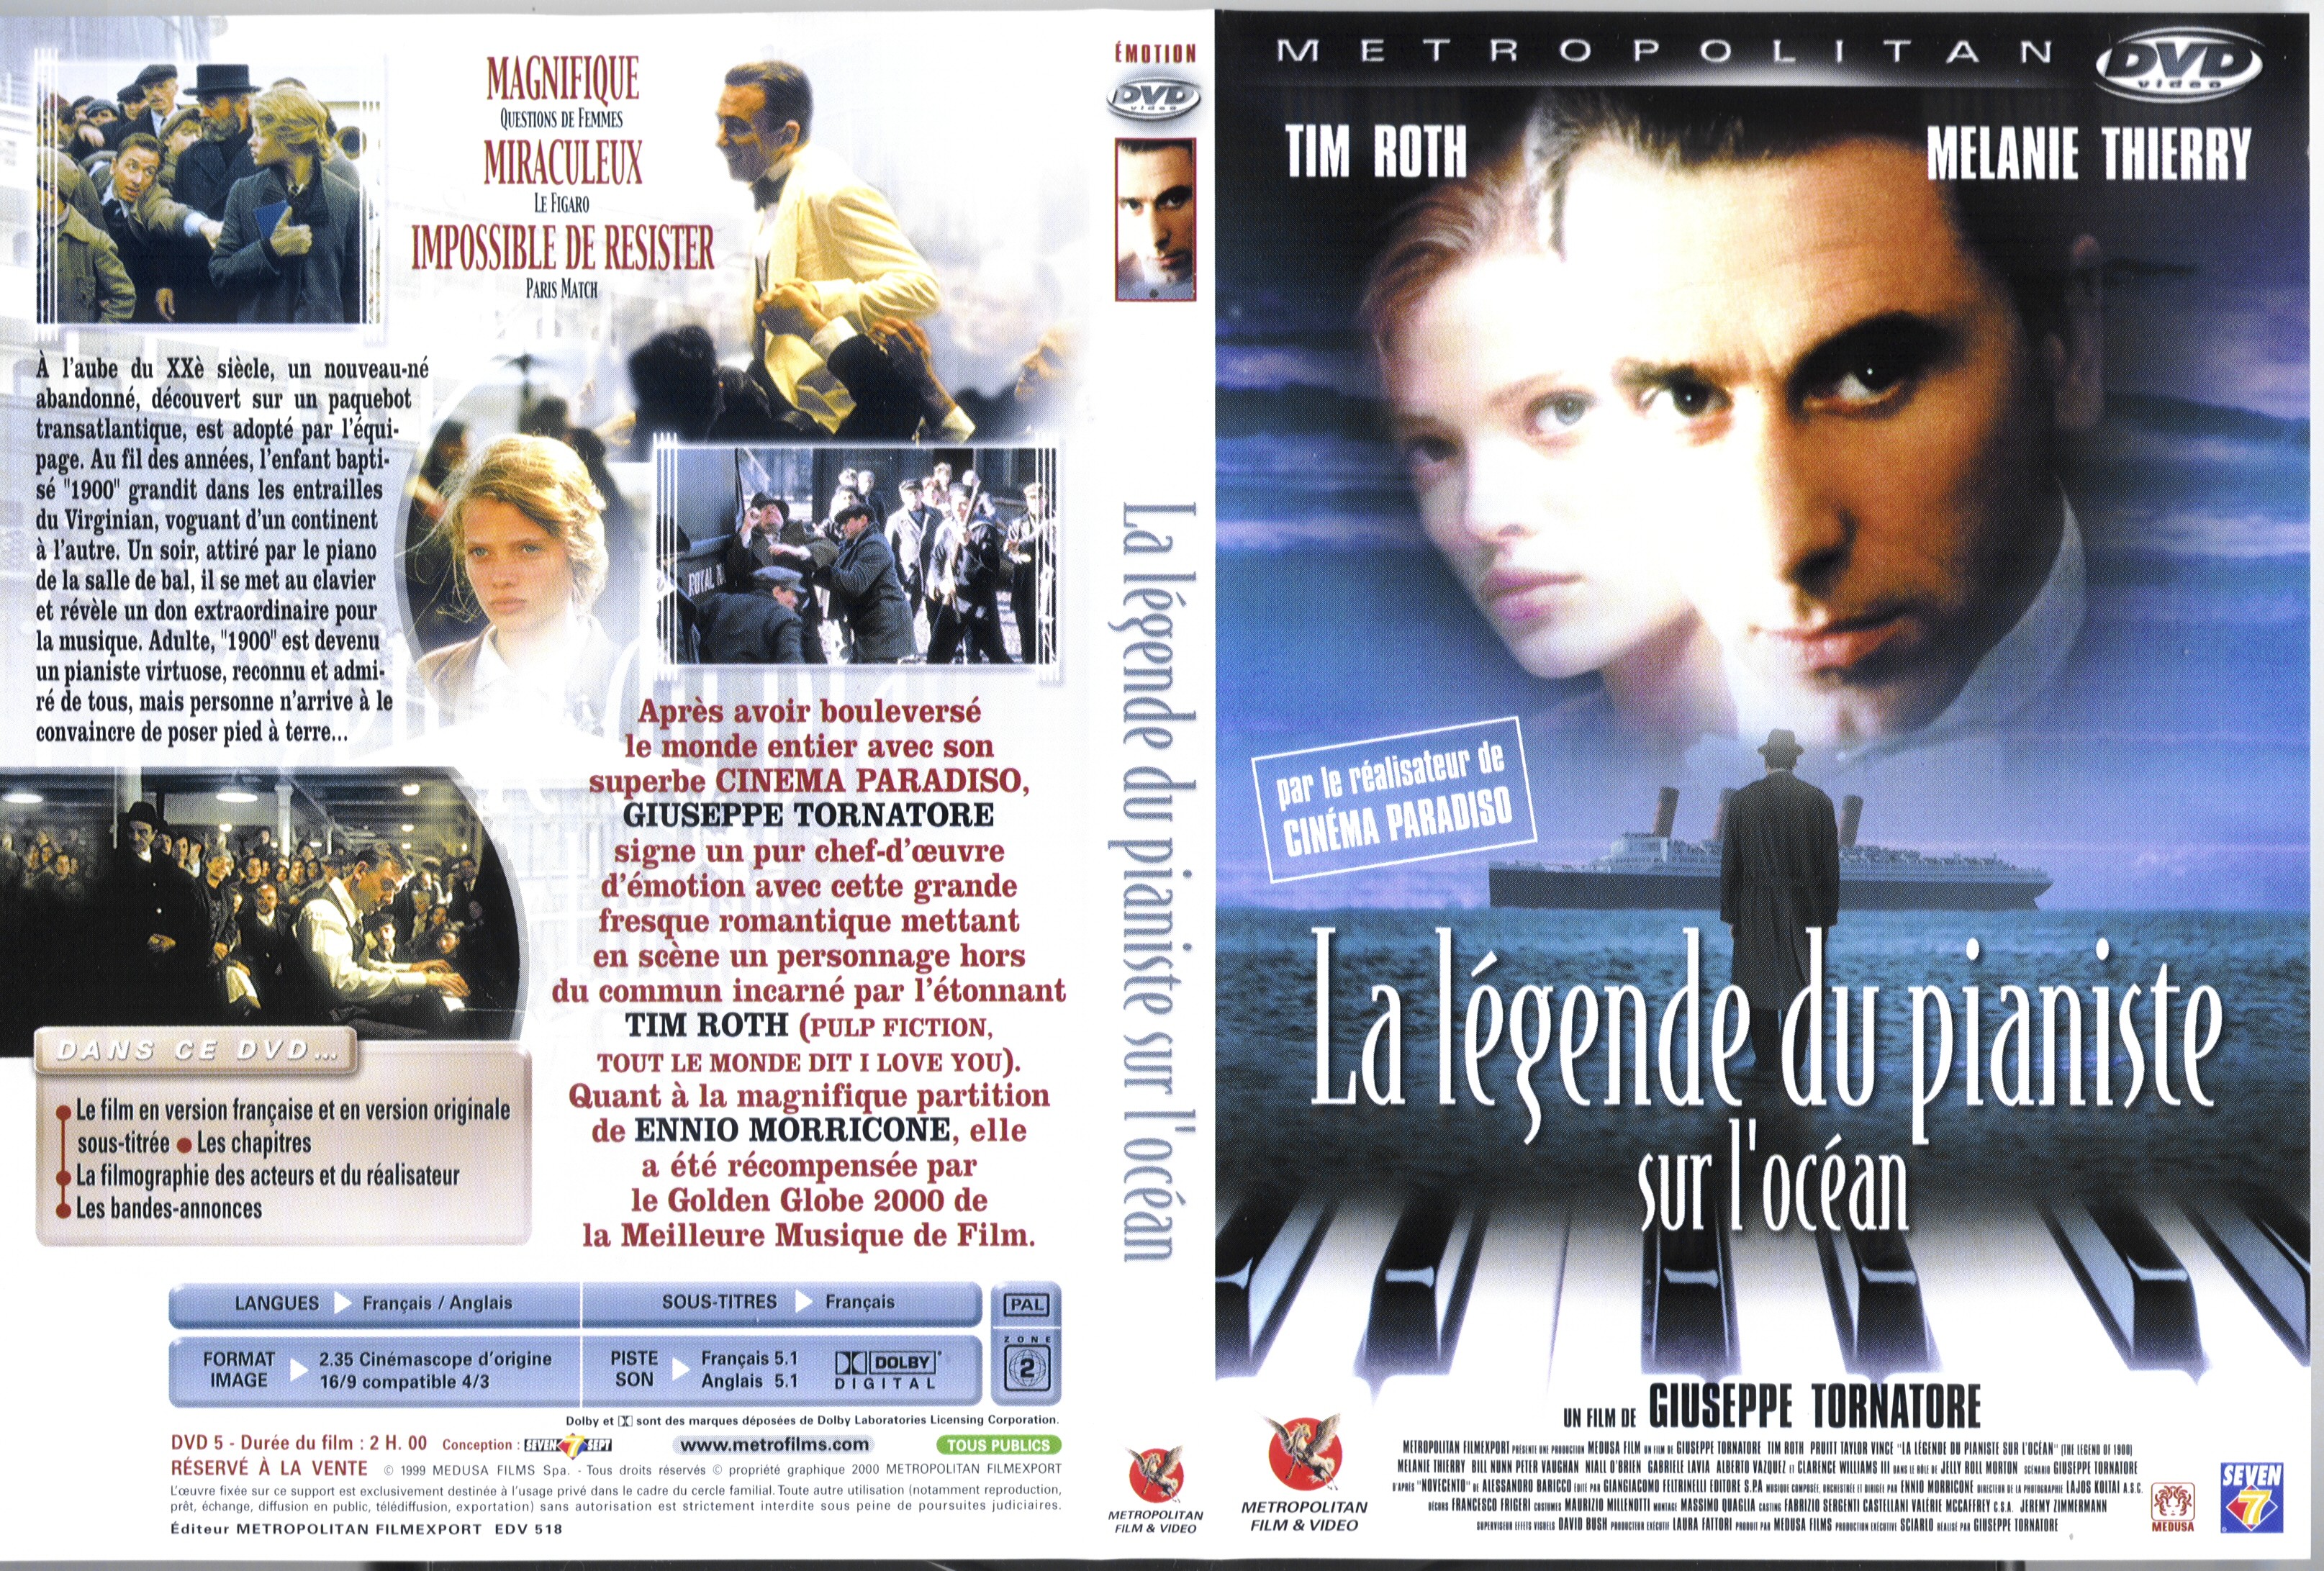 Jaquette DVD La legende du pianiste sur l ocean